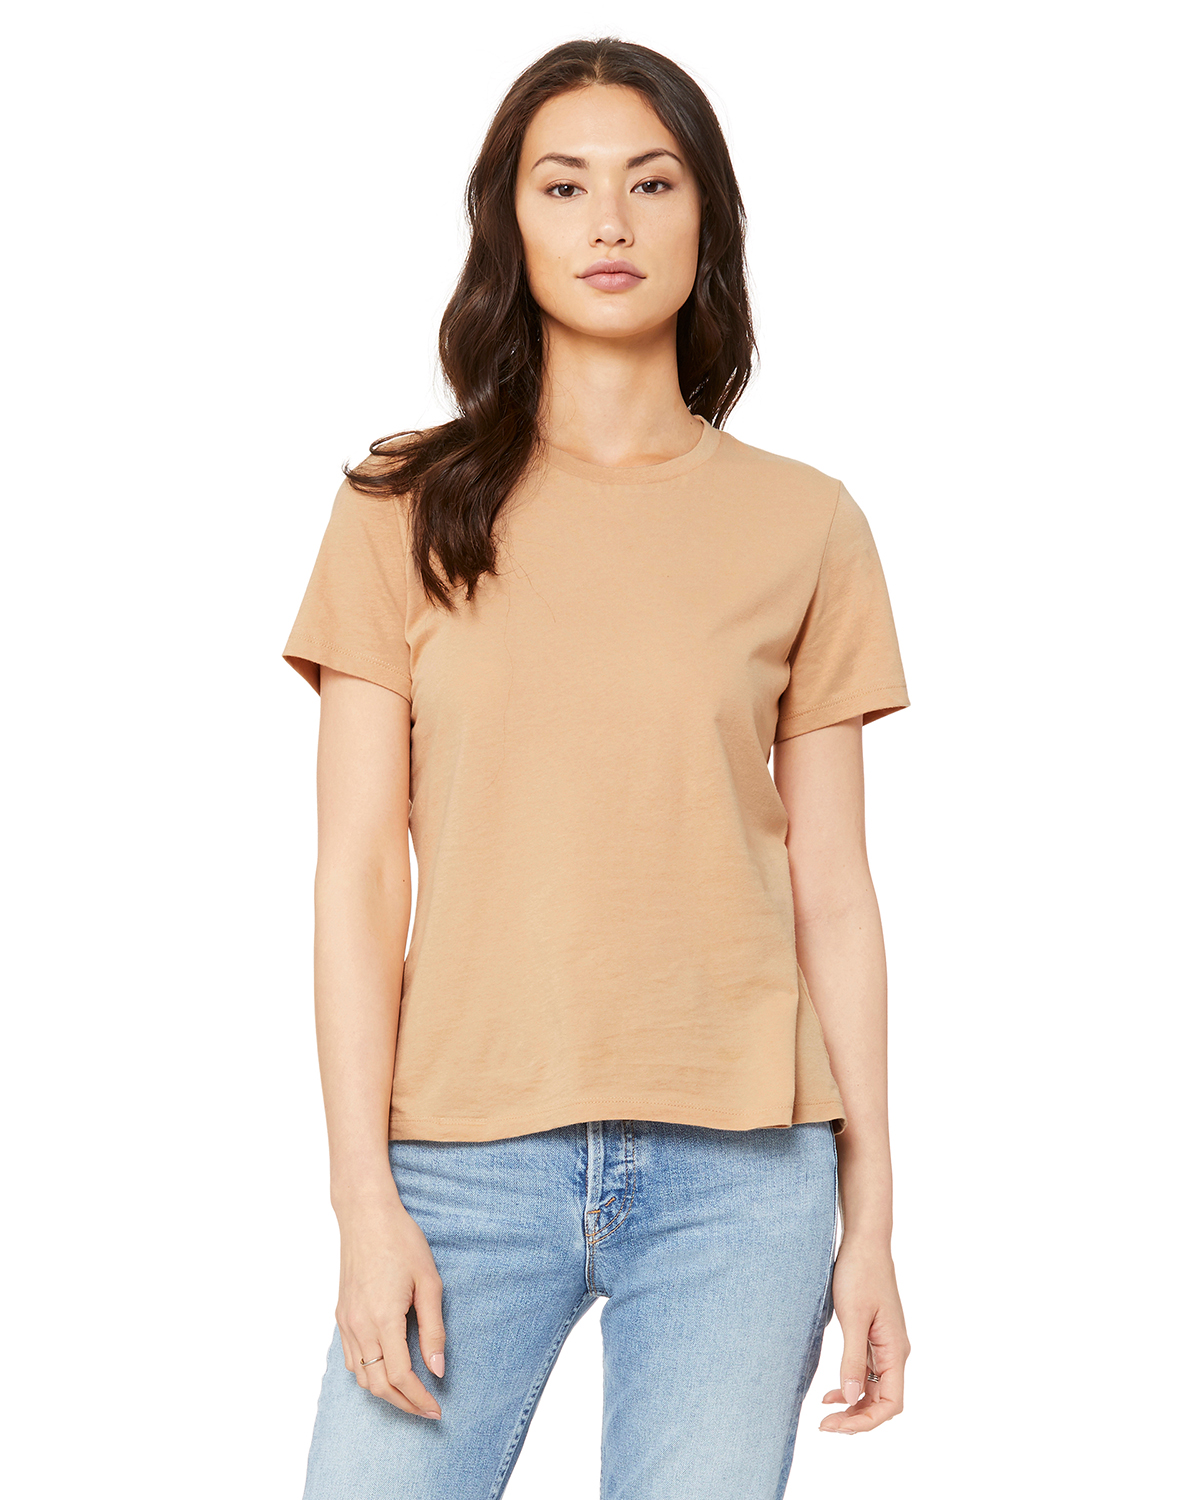 Ingeniører eksekverbar Måler Bella Canvas B6400 Ladies' Relaxed Jersey Short-Sleeve T-Shirt | JiffyShirts